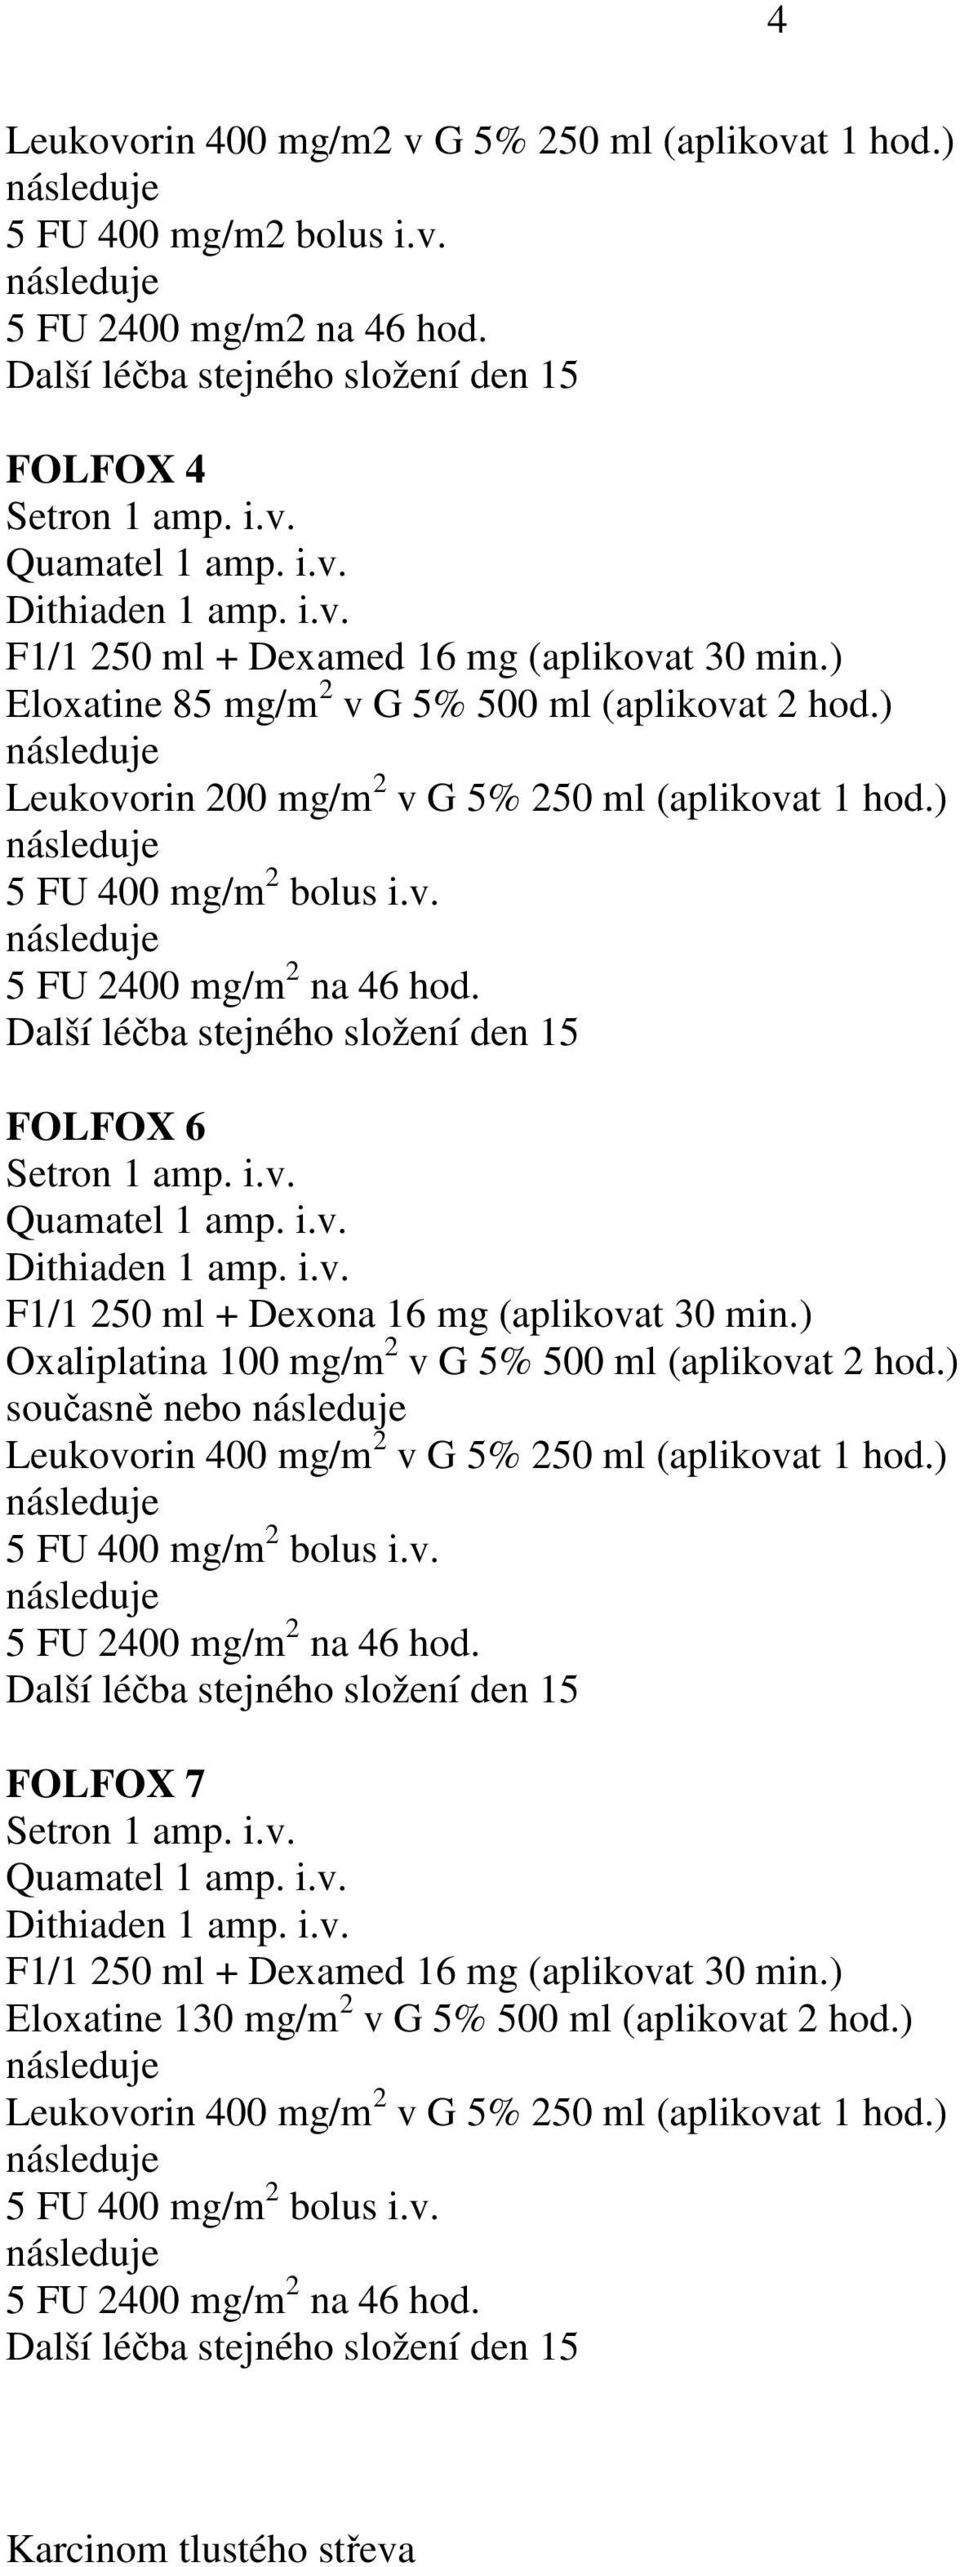 ) Leukovorin 200 mg/m 2 v G 5% 250 ml (aplikovat 1 hod.) FOLFOX 6 F1/1 250 ml + Dexona 16 mg (aplikovat 30 min.